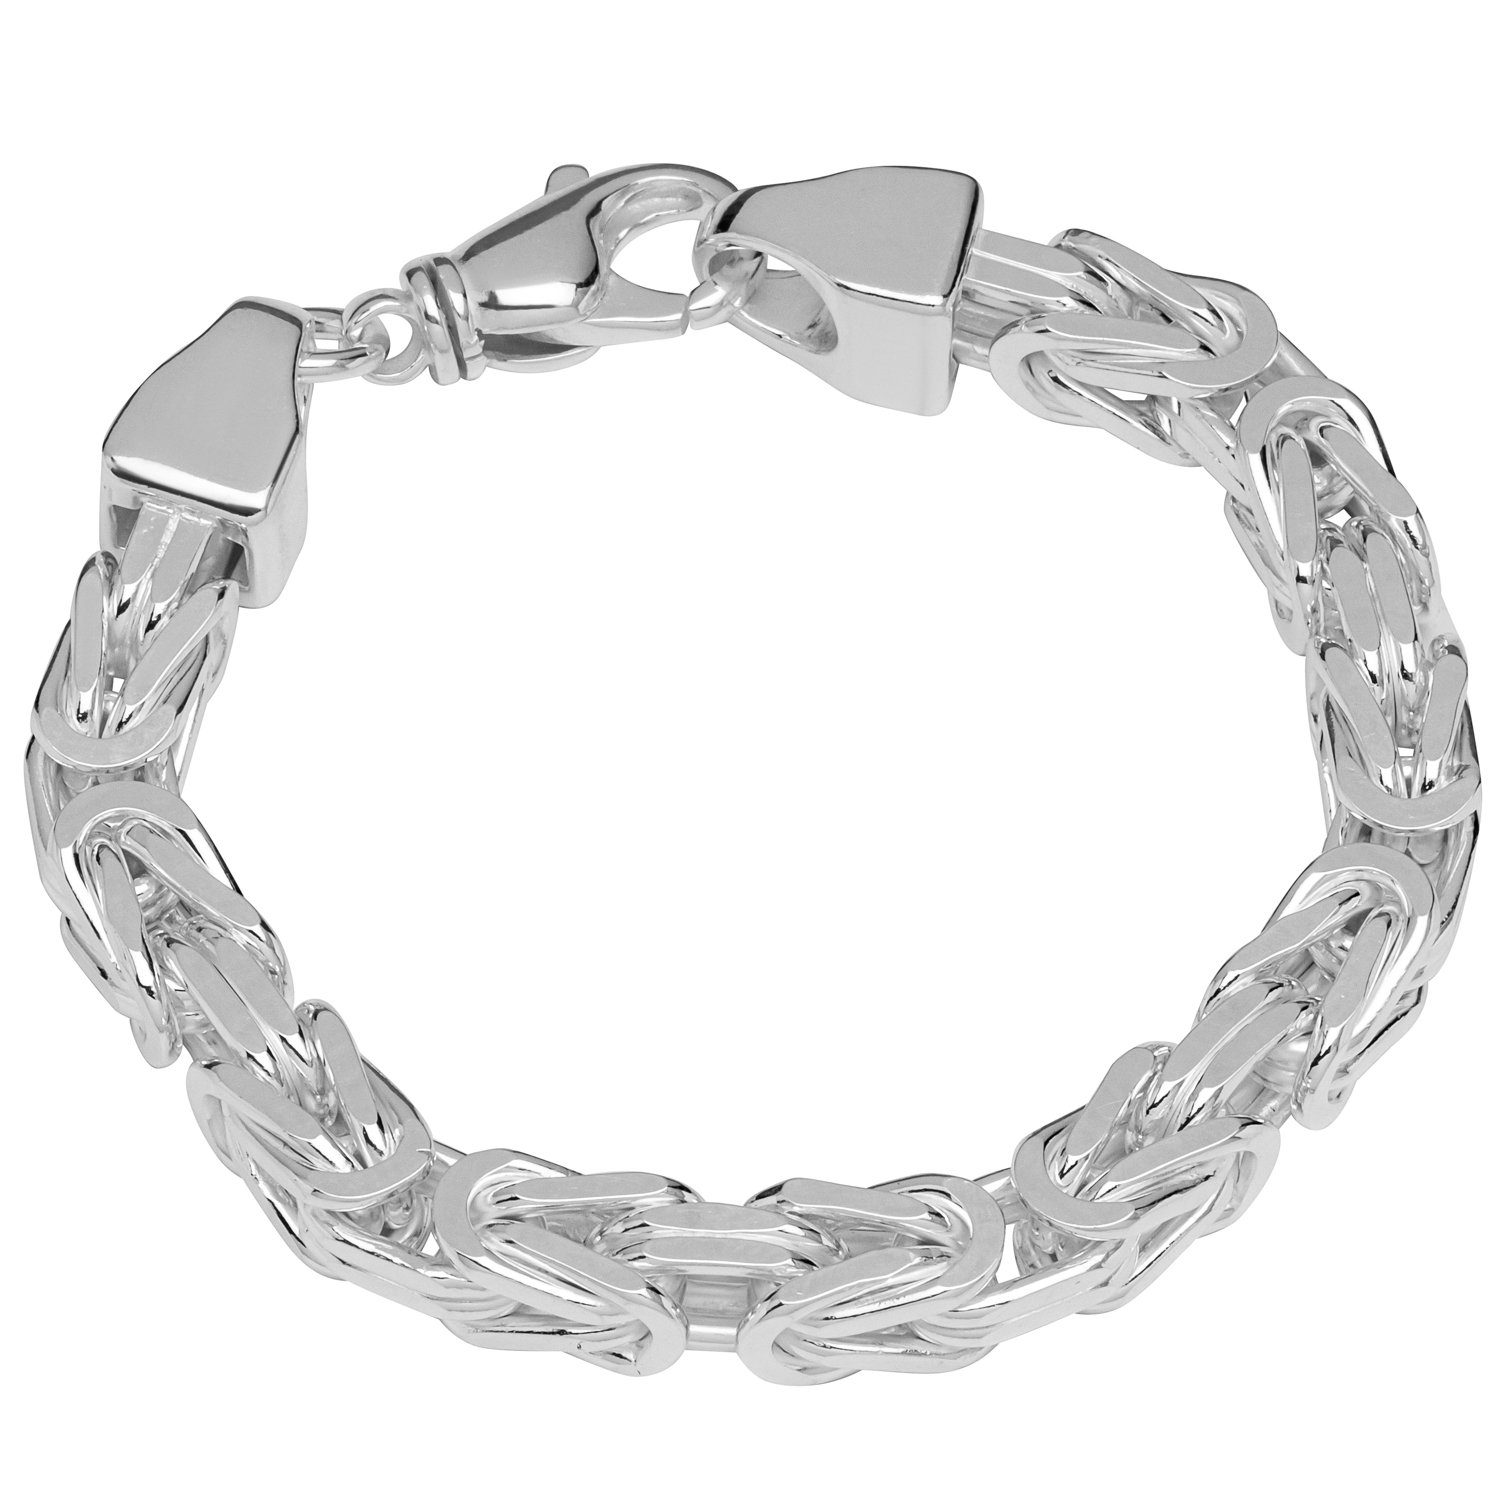 NKlaus Königskette Königskette 925 Silber Königs diamantiert Armband (1 Stück), Made in Germany